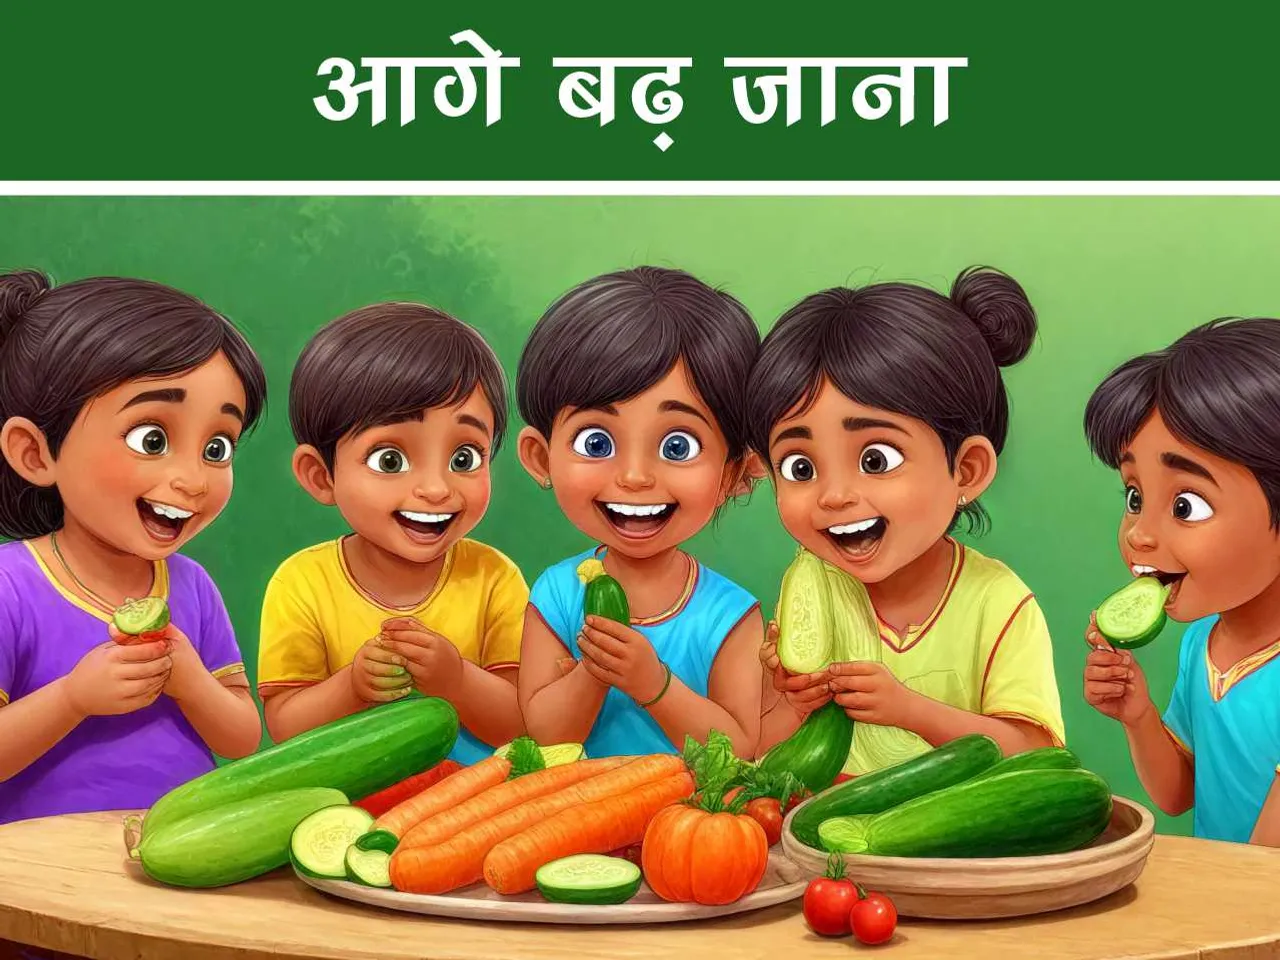 cartoon image of kids eating cucumber